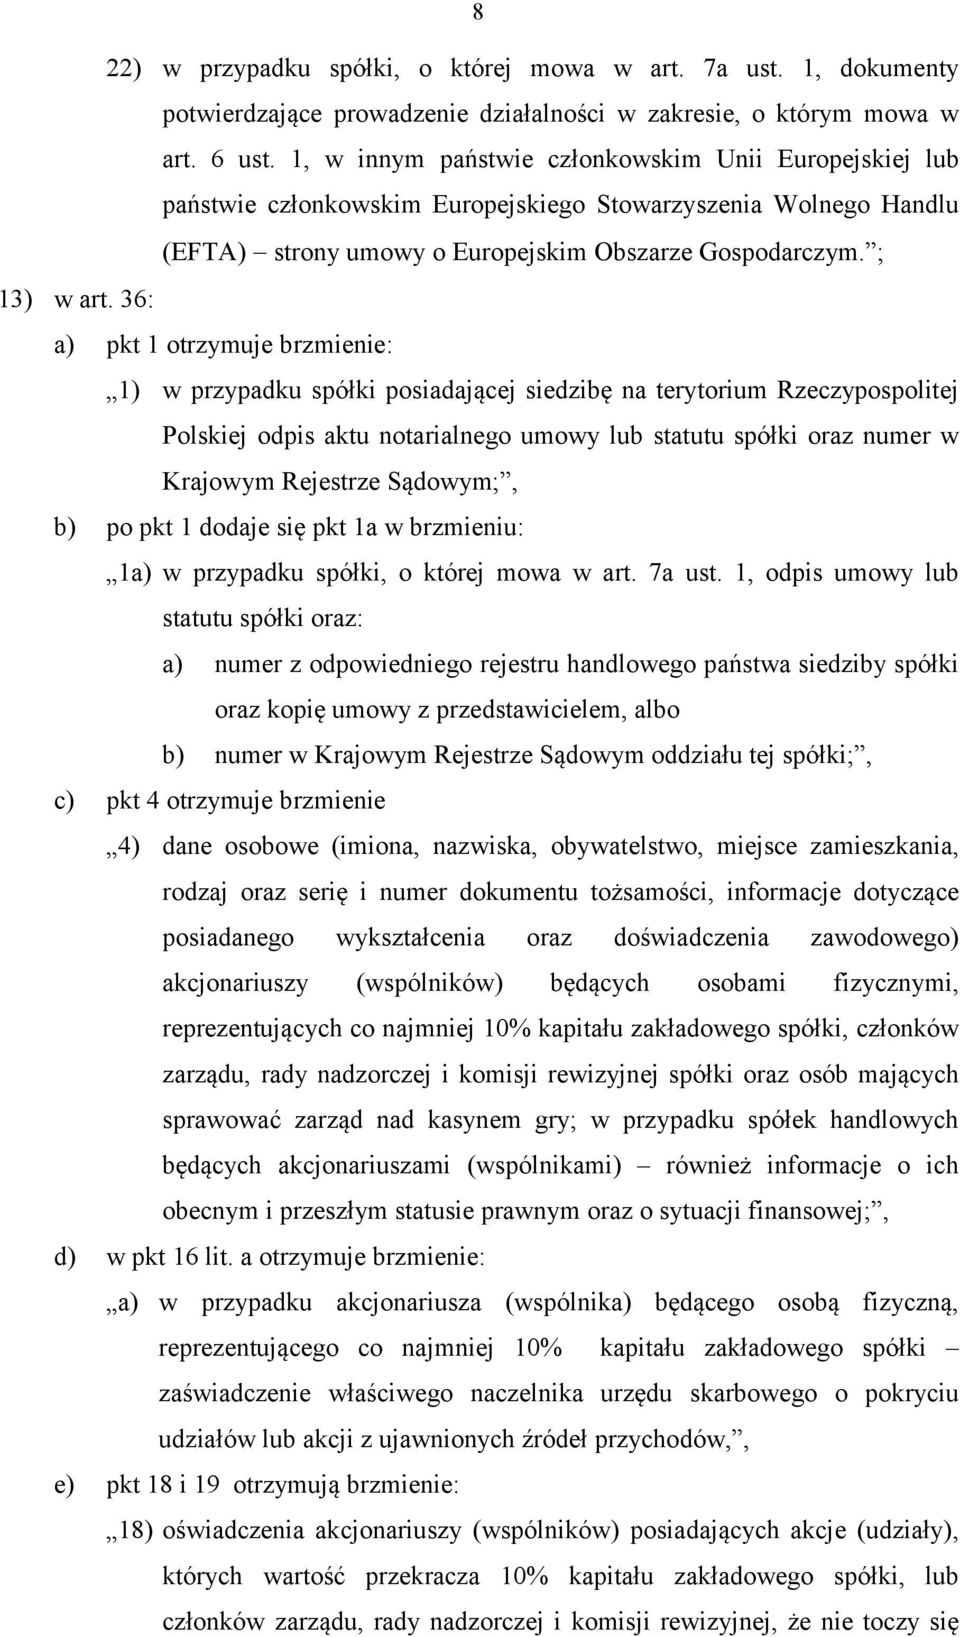 36: a) pkt 1 otrzymuje brzmienie: 1) w przypadku spółki posiadającej siedzibę na terytorium Rzeczypospolitej Polskiej odpis aktu notarialnego umowy lub statutu spółki oraz numer w Krajowym Rejestrze